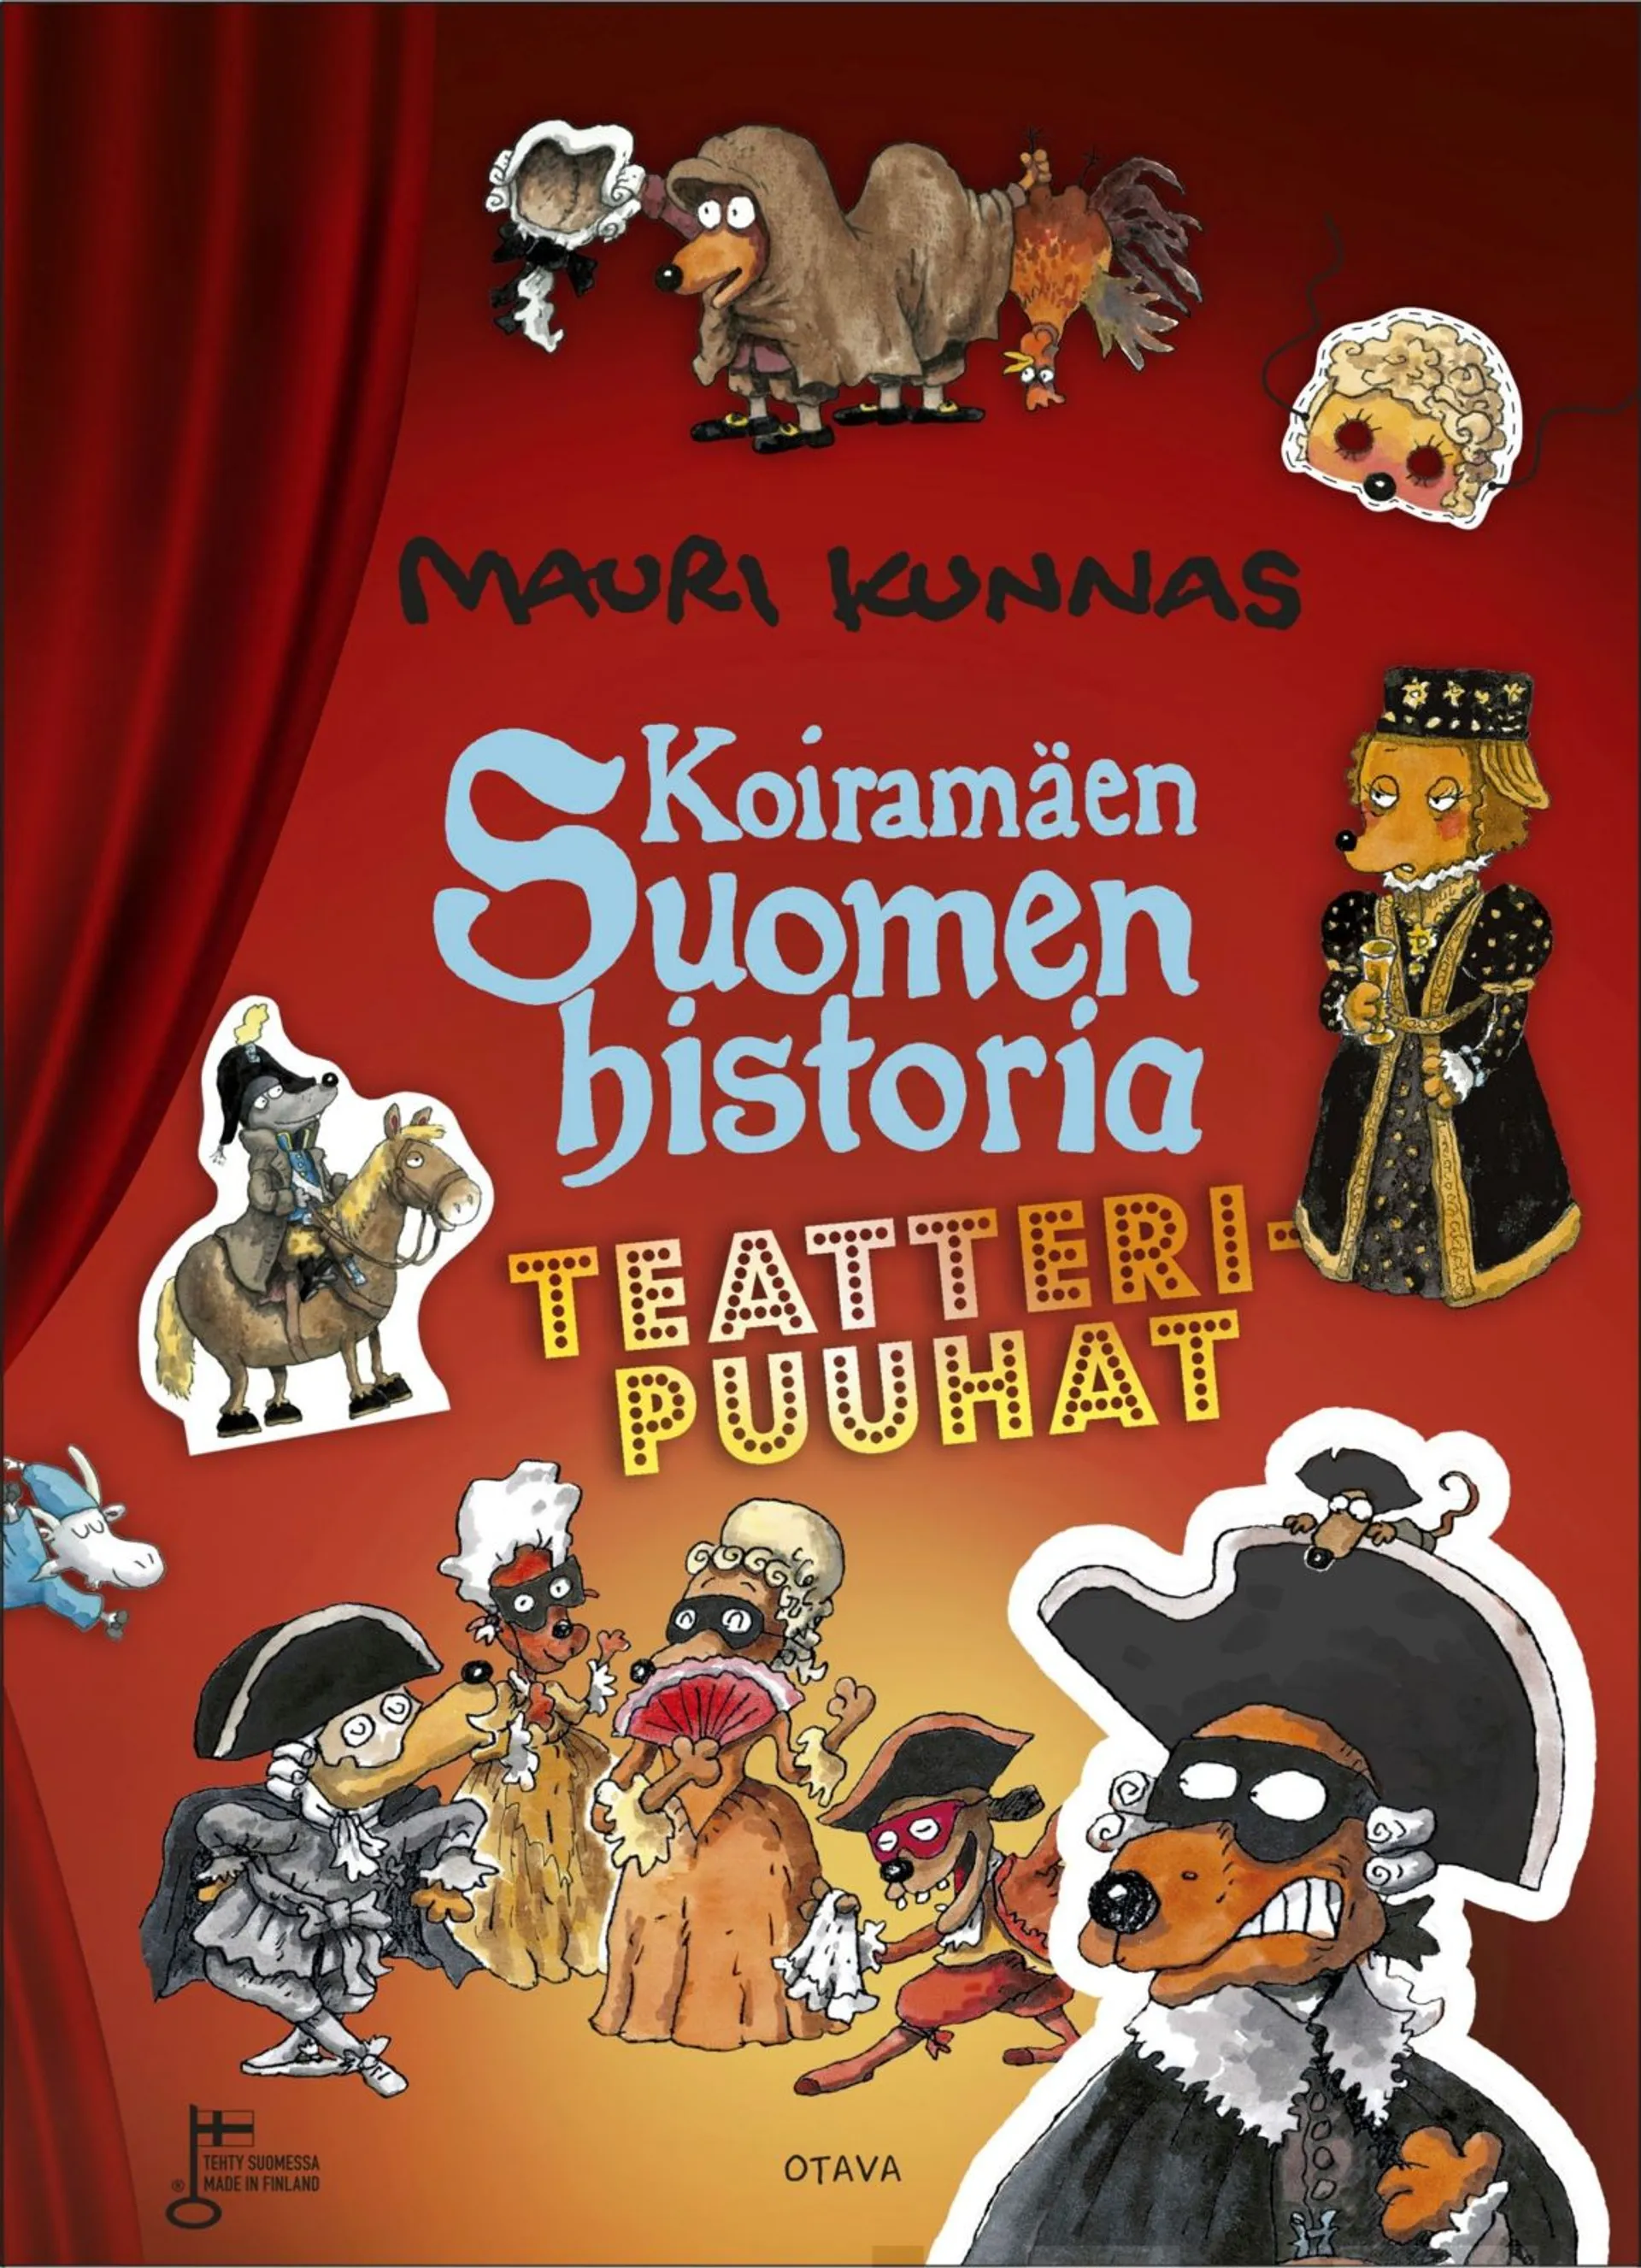 Kunnas, Koiramäen Suomen historia puuhakirja